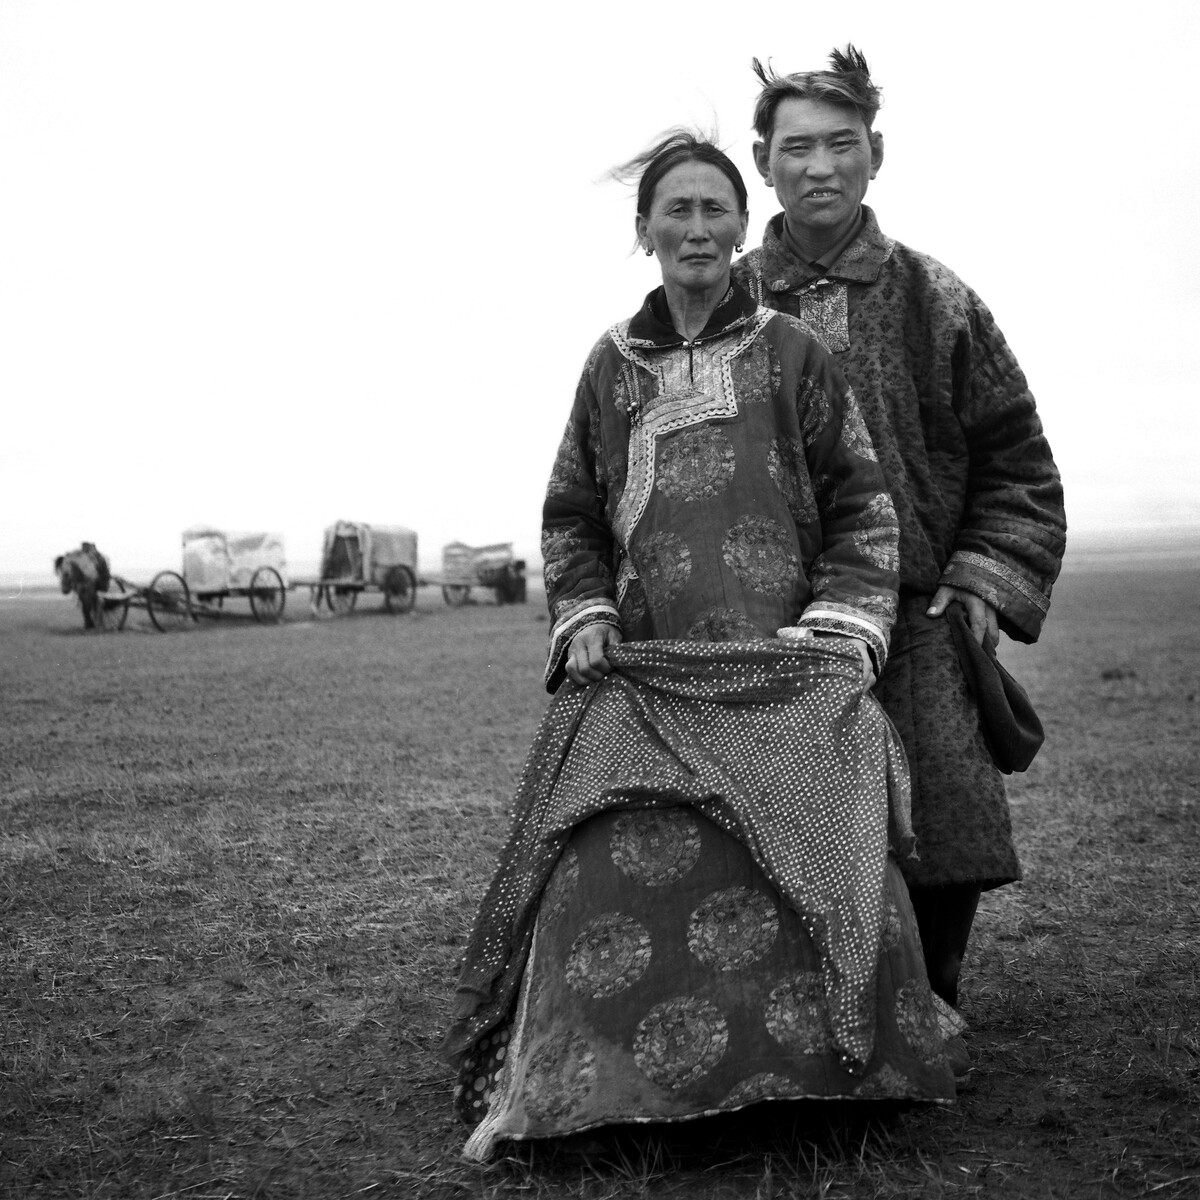 2006年11月拍摄于内蒙古锡林郭勒盟草原   夫妻俩